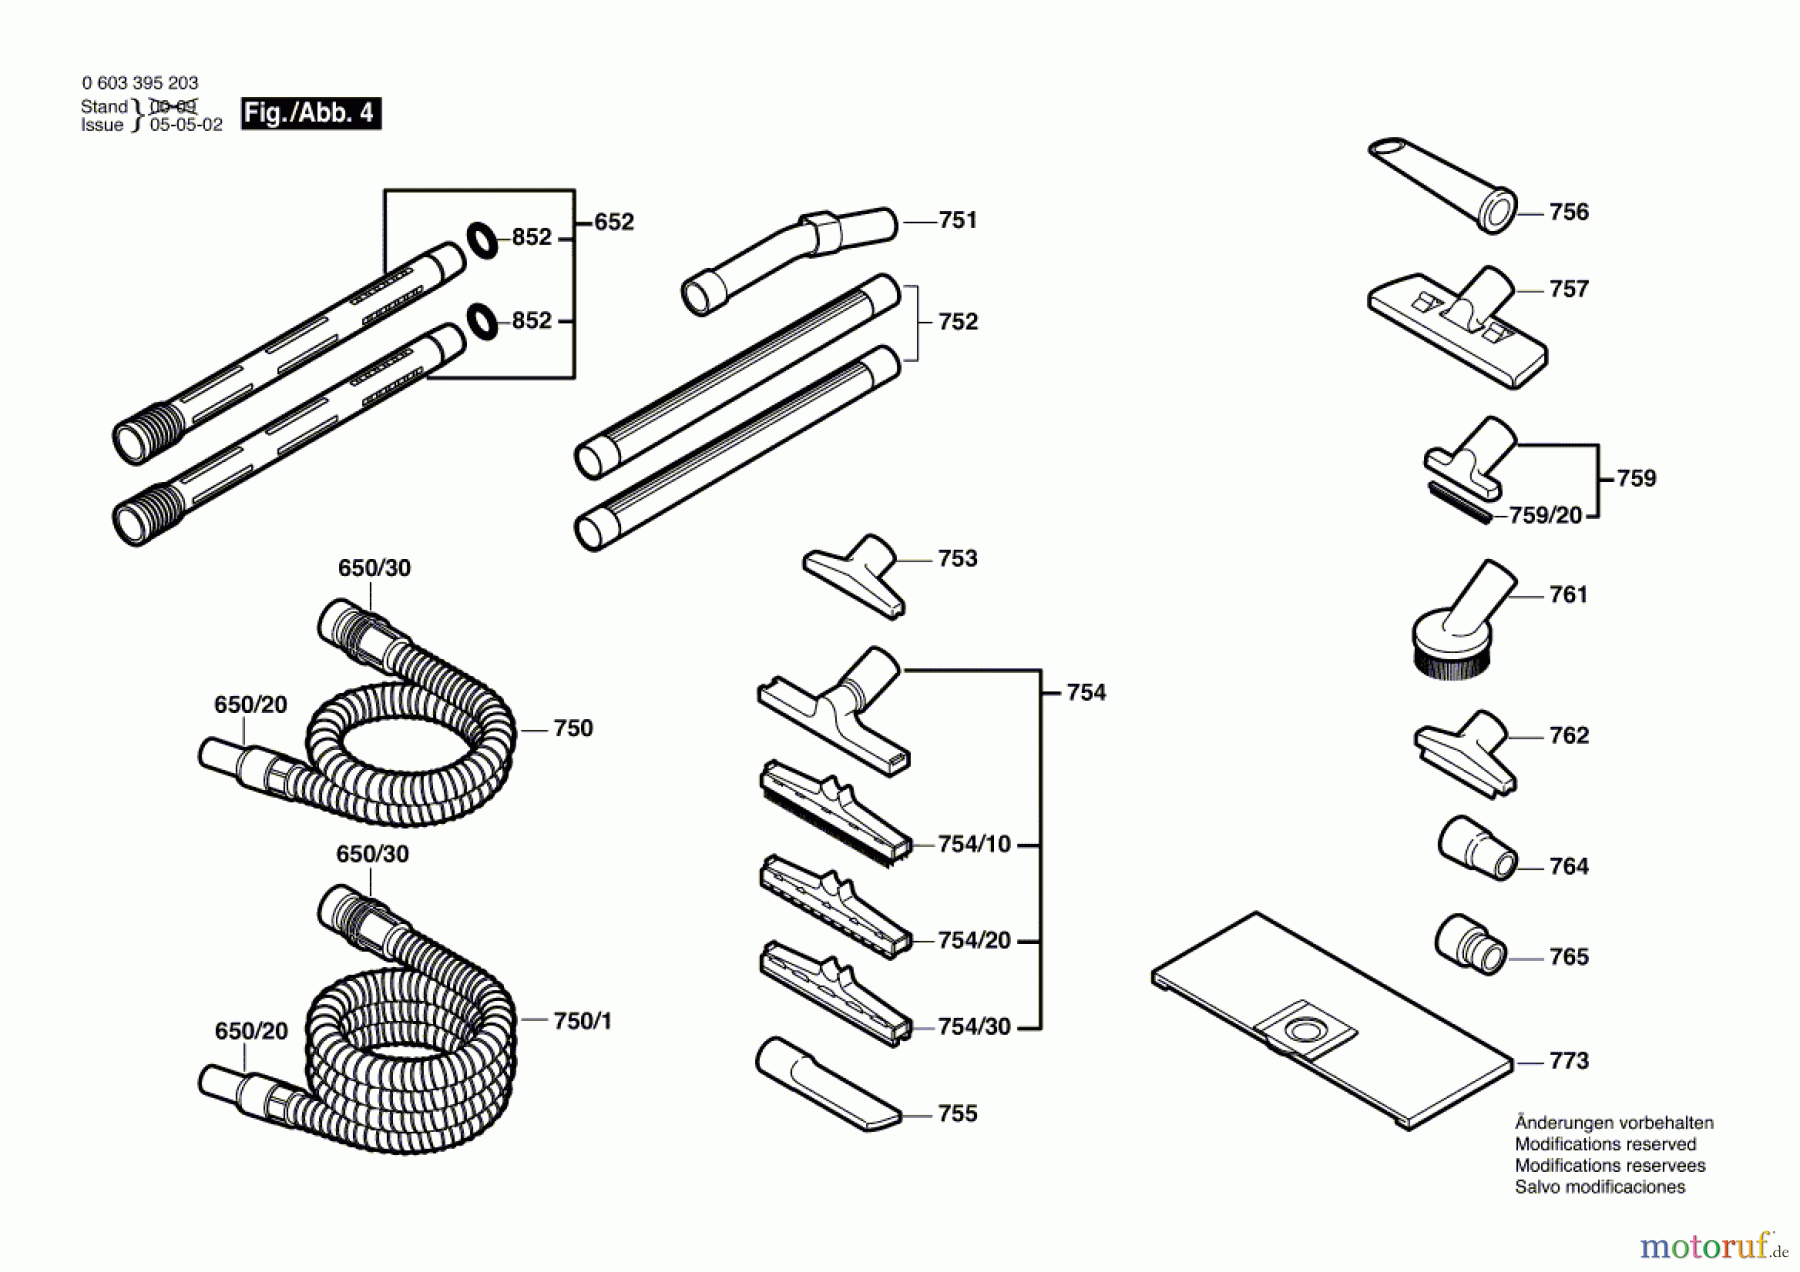  Bosch Werkzeug Allzwecksauger PAS 12-27 F Seite 4